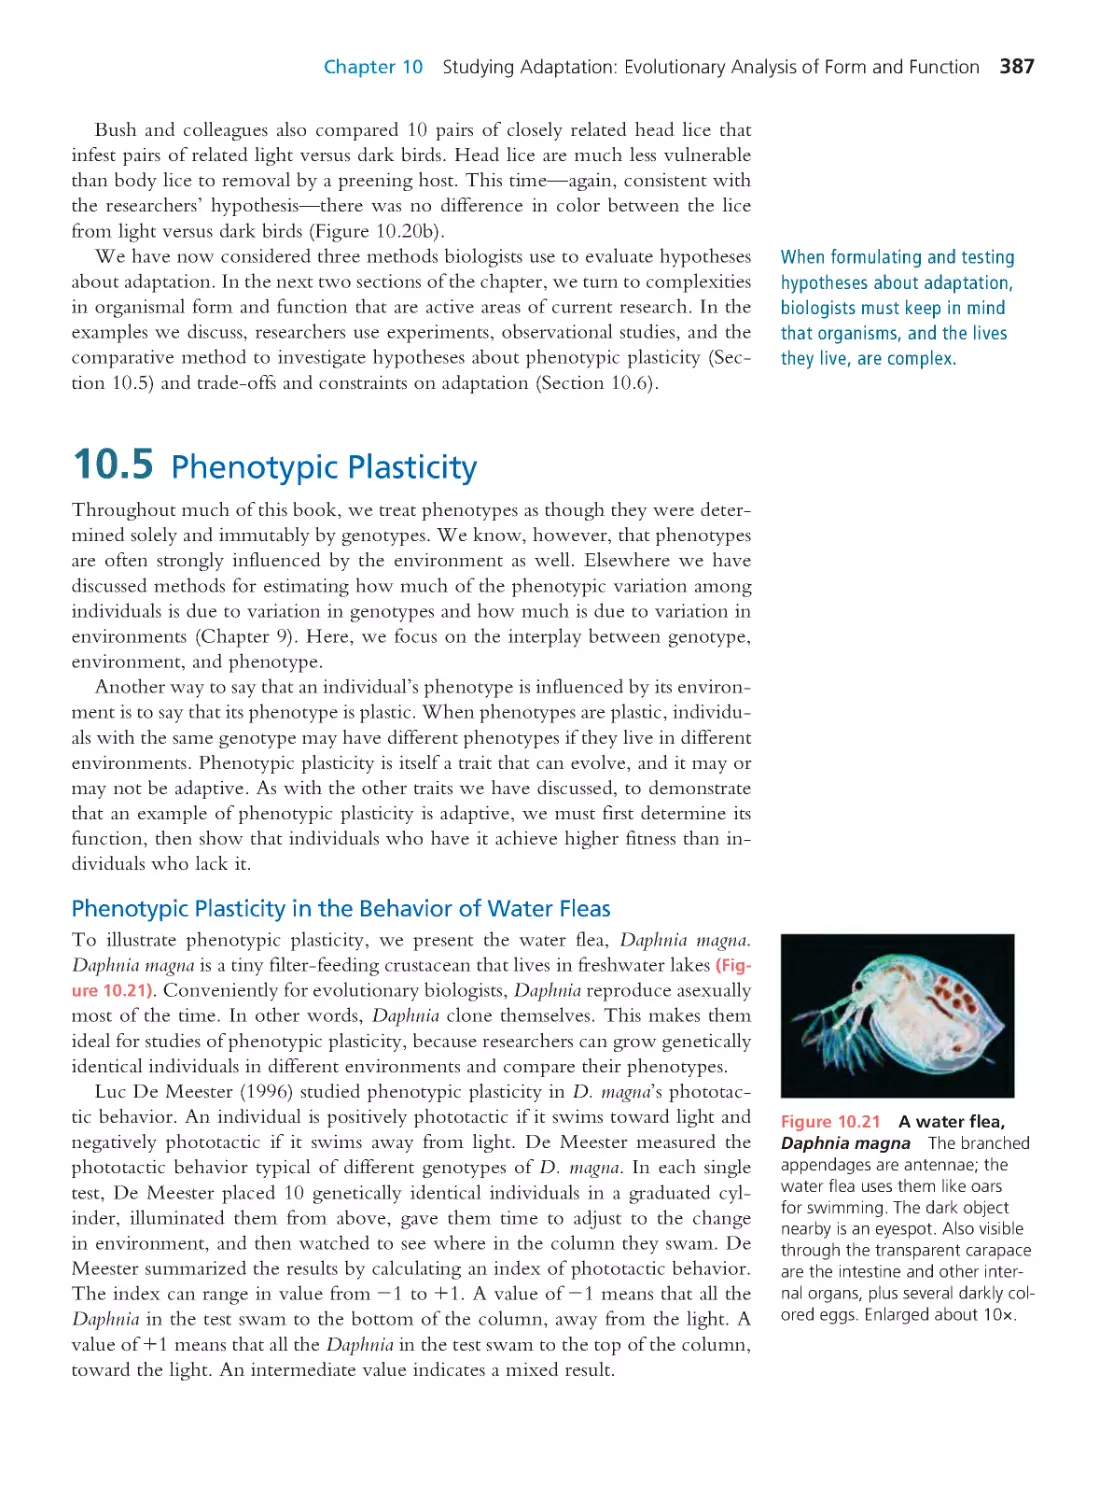 10.5 Phenotypic Plasticity